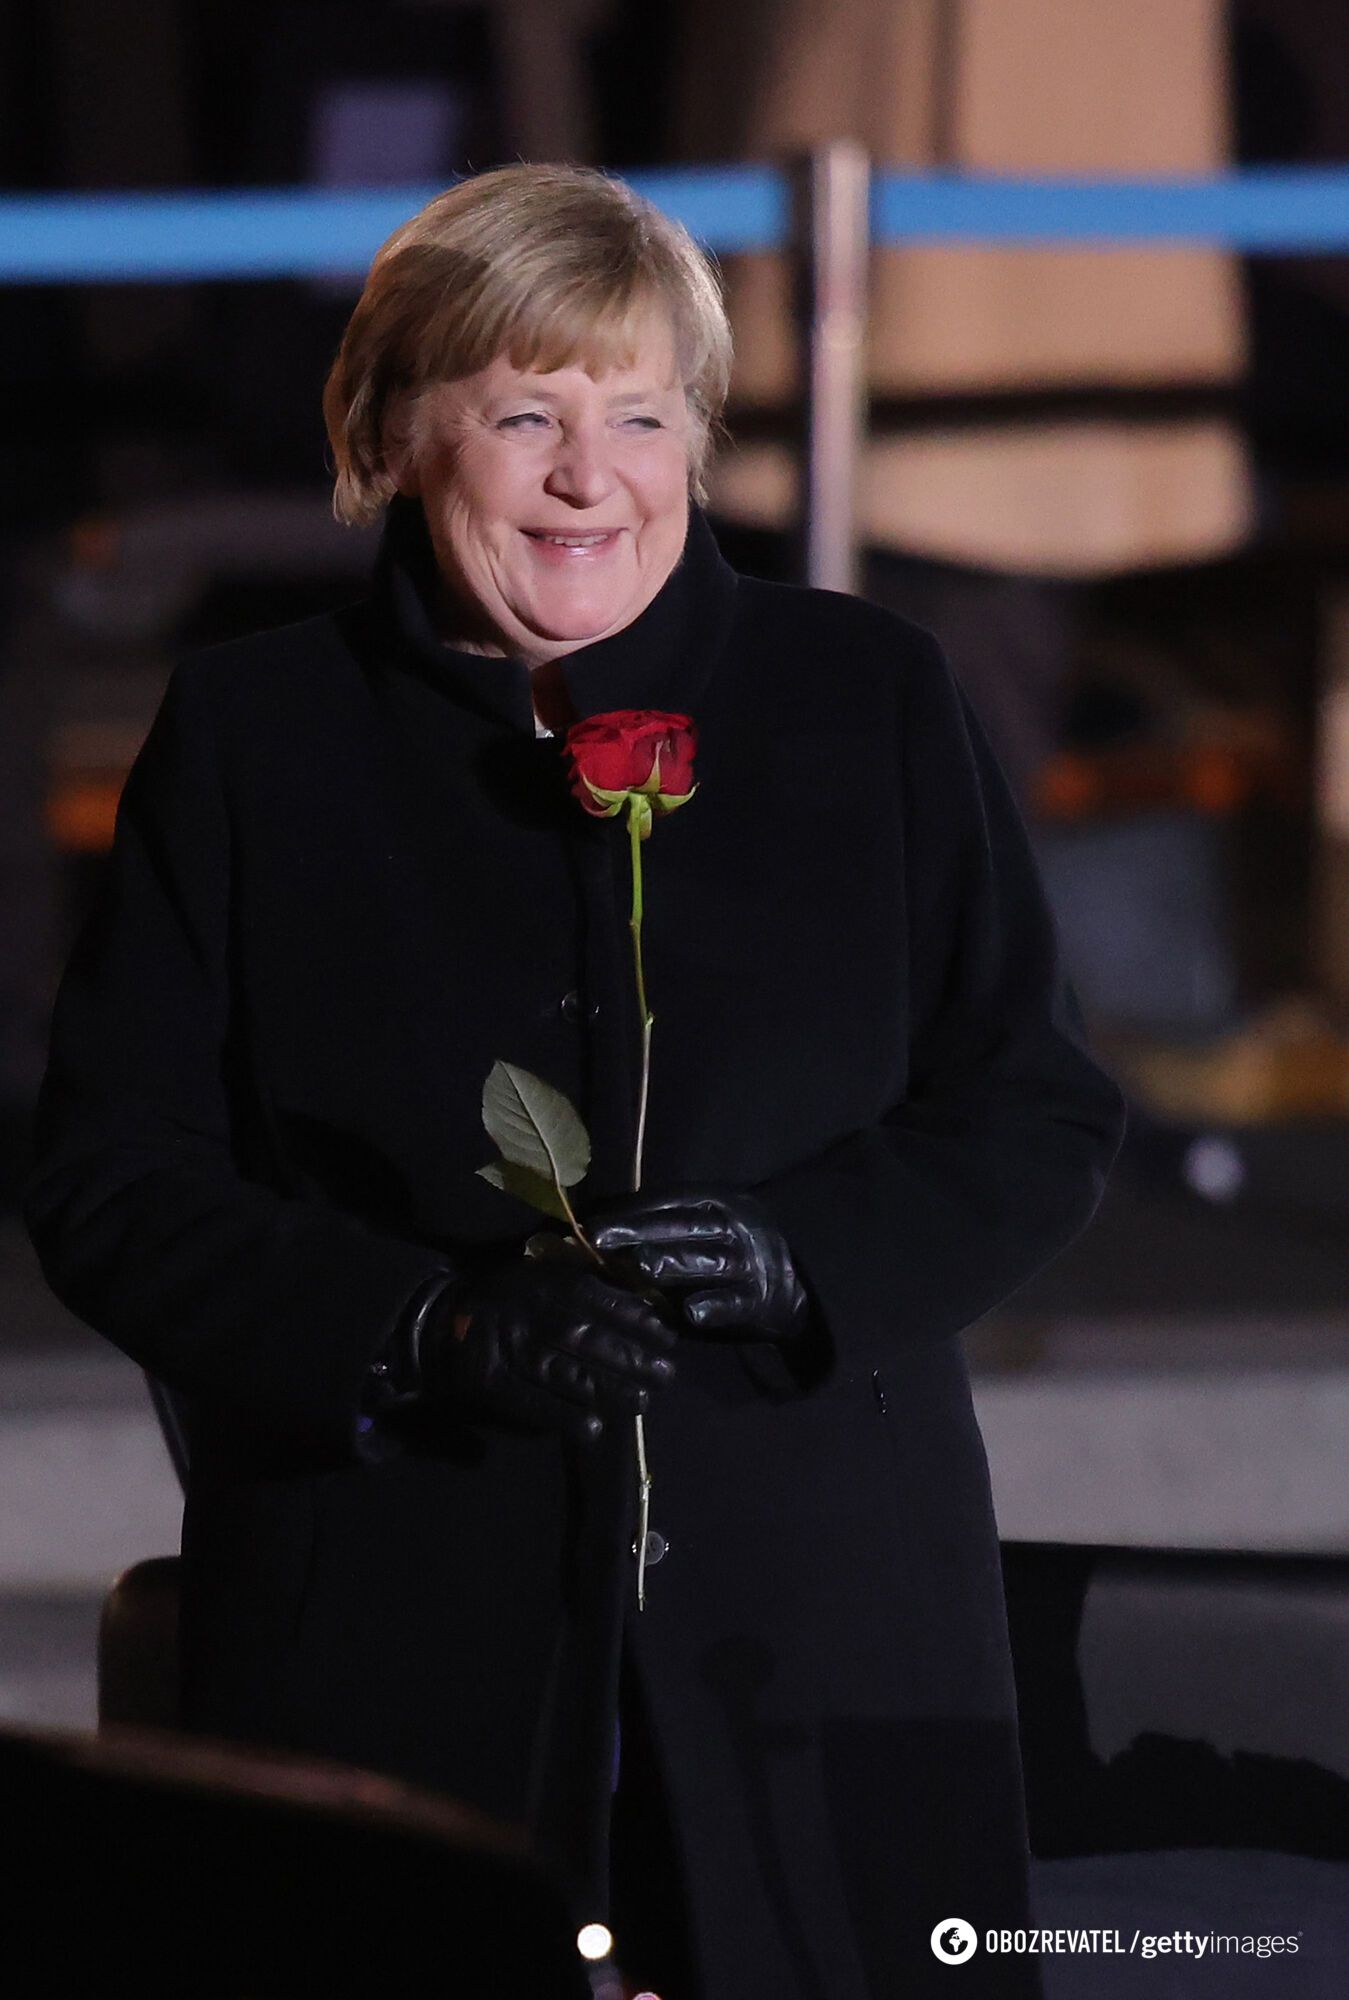 55 tysięcy euro na fryzurę i makijaż: Merkel, która wyróżniała się cynizmem wobec Ukrainy, została przyłapana na skandalu. Gdzie jest teraz? Zdjęcie